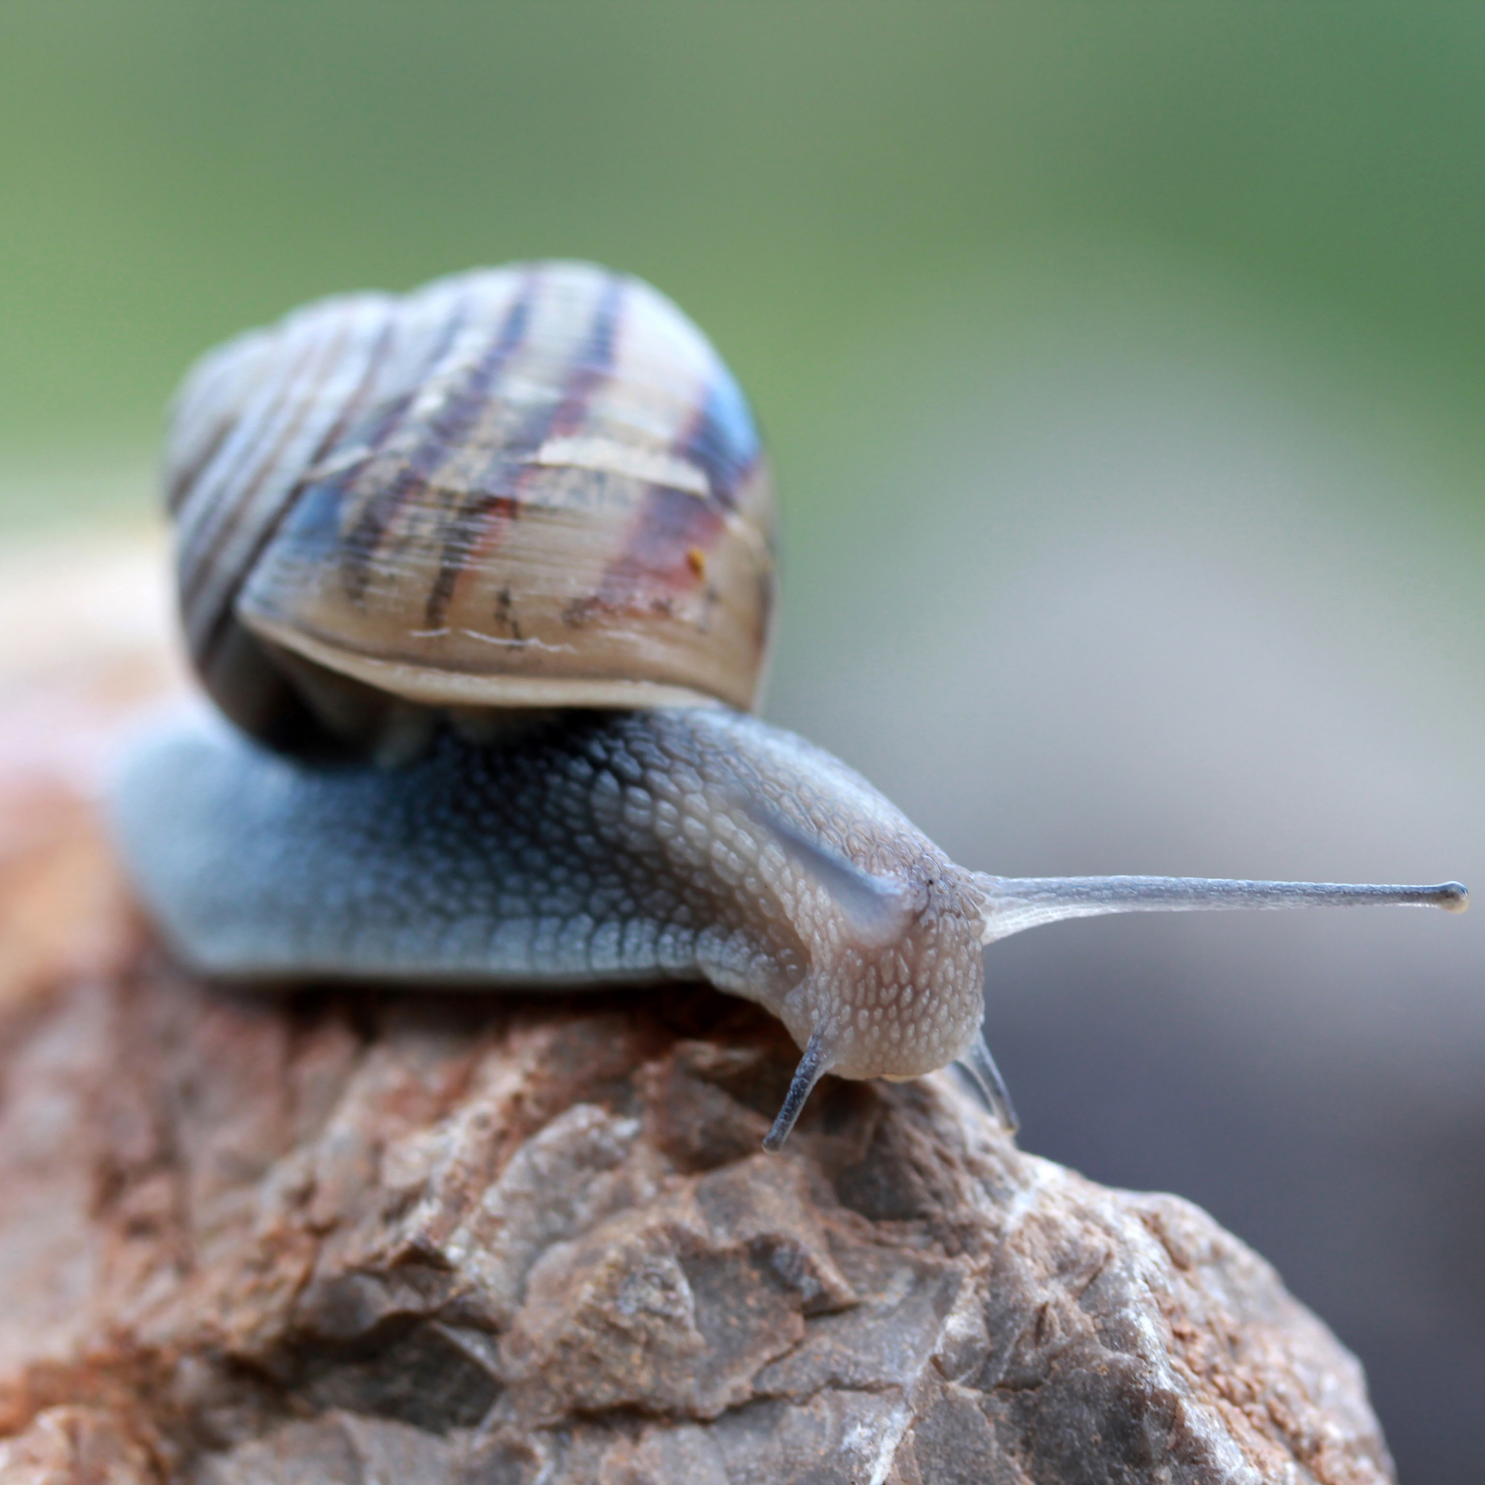 Snails_Slugs